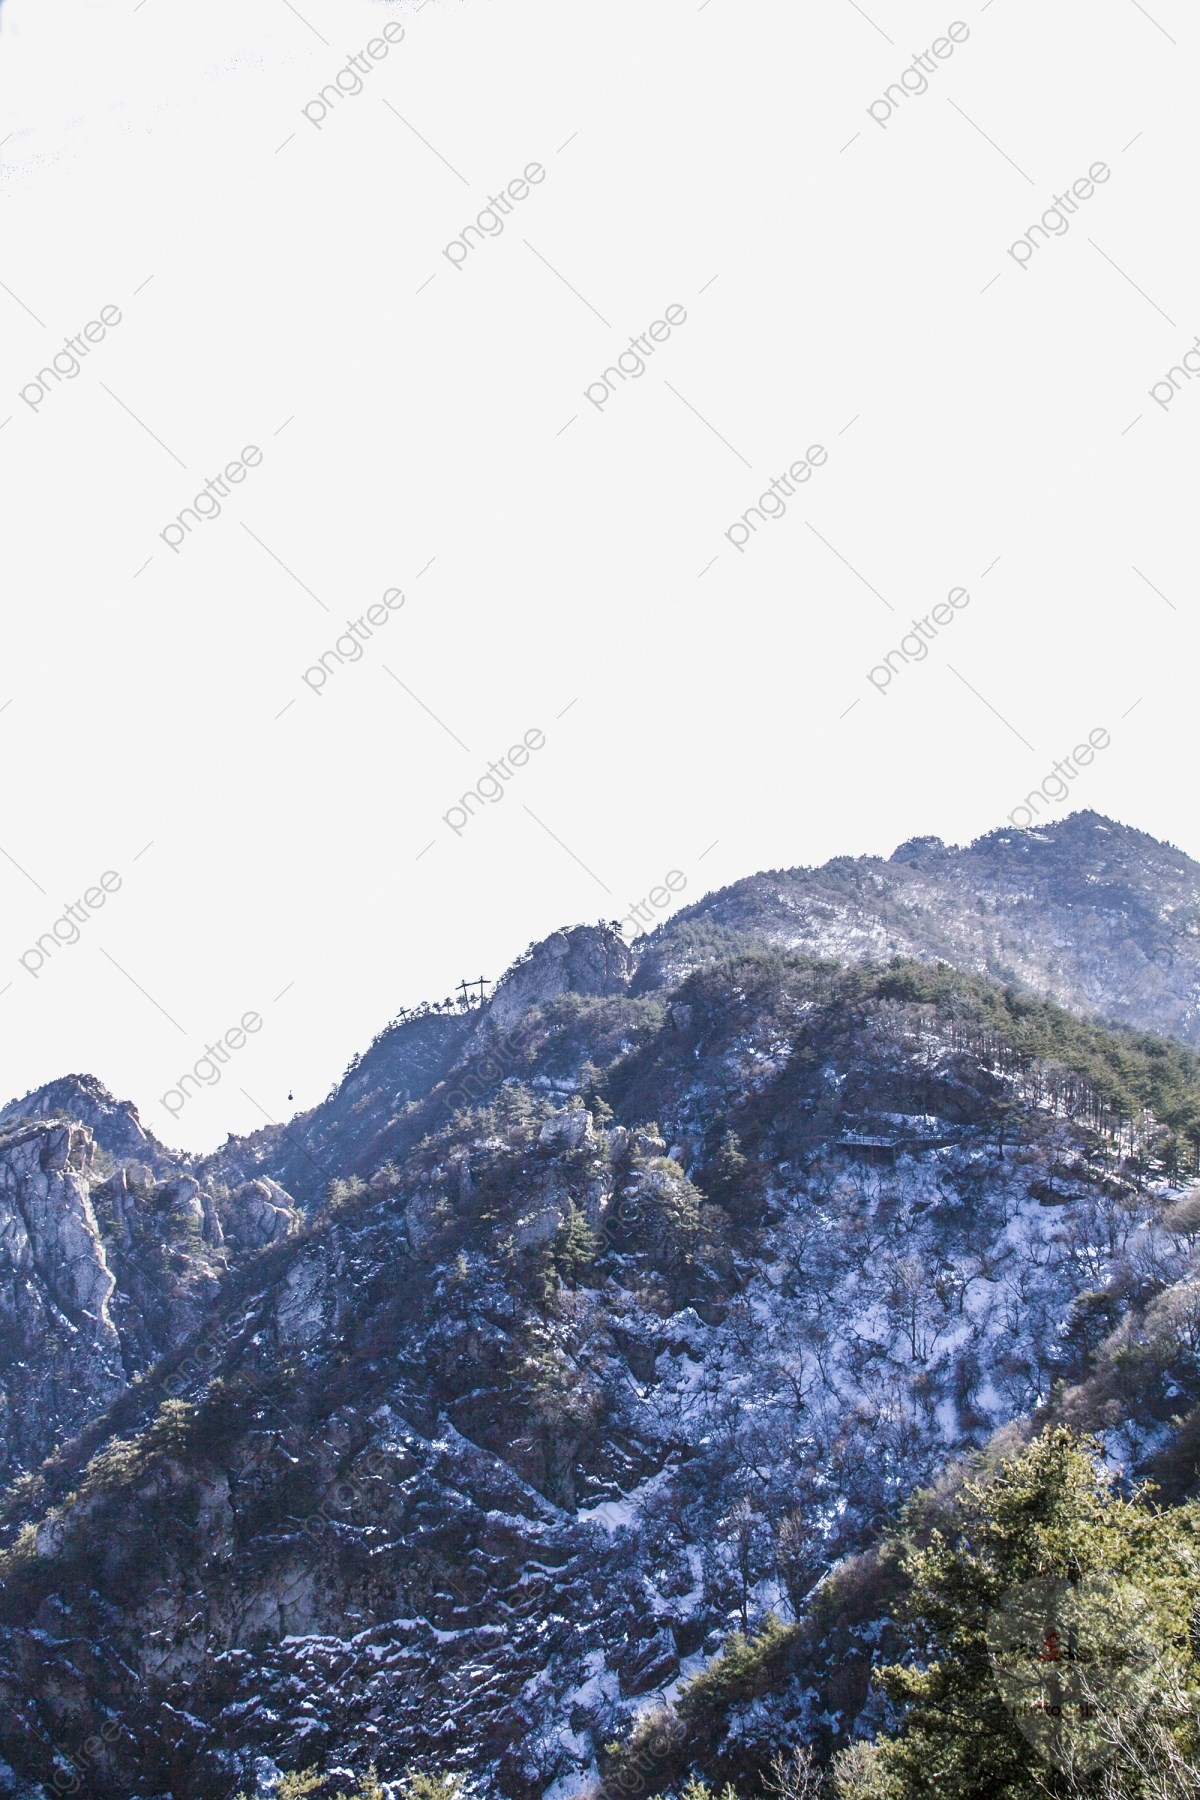 صور وخلفيات جبال وشلالات طبيعية HD خلفيات جبال خضراء وثلجية 43